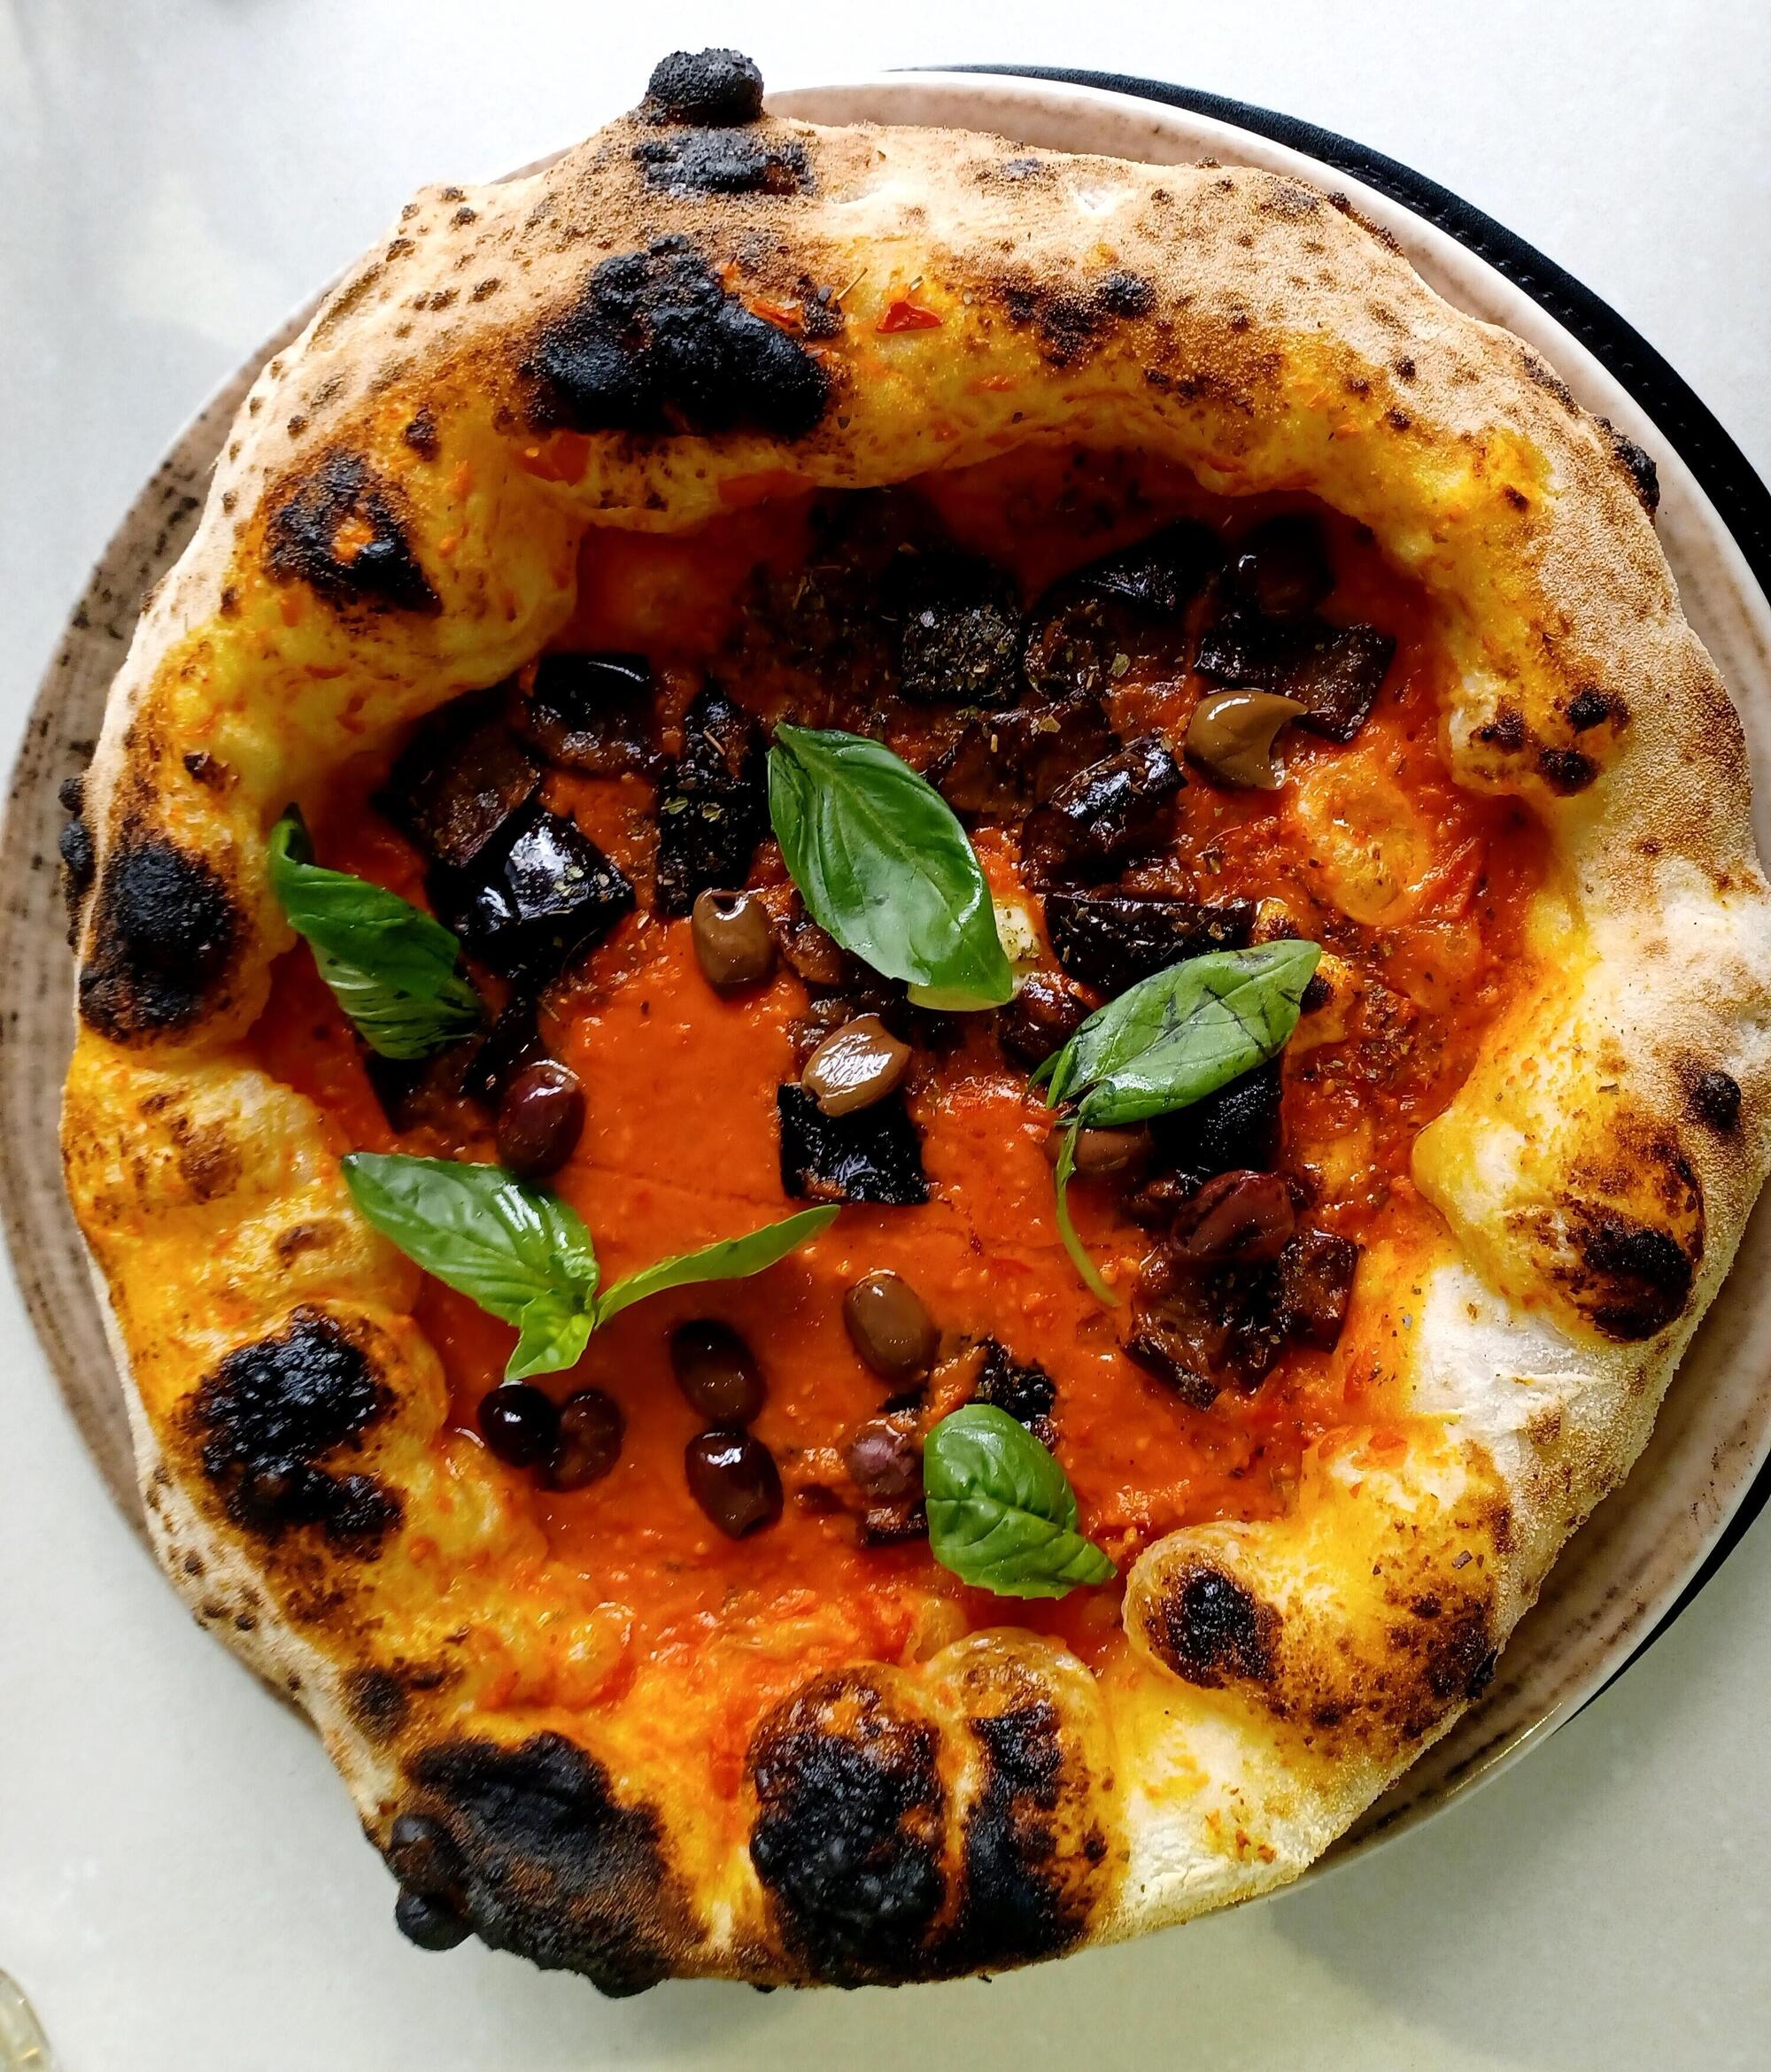 La pizza marinara con olive, basilico e melanzane